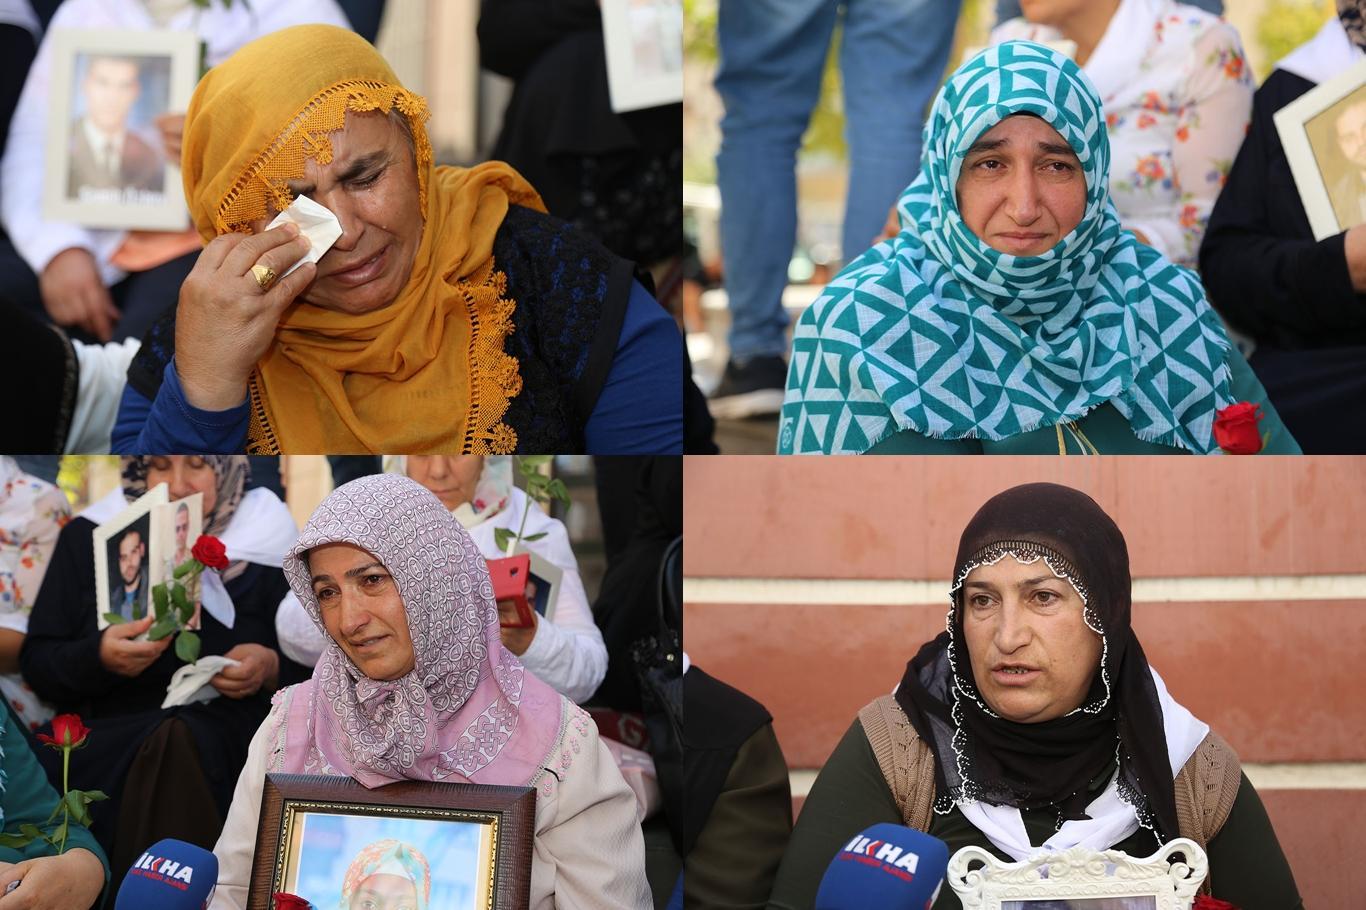 لا تتوقف دموع الأسر التي اختطف أبنائهم إلى المعسكرات تنظيم بي كا كا على الجبال